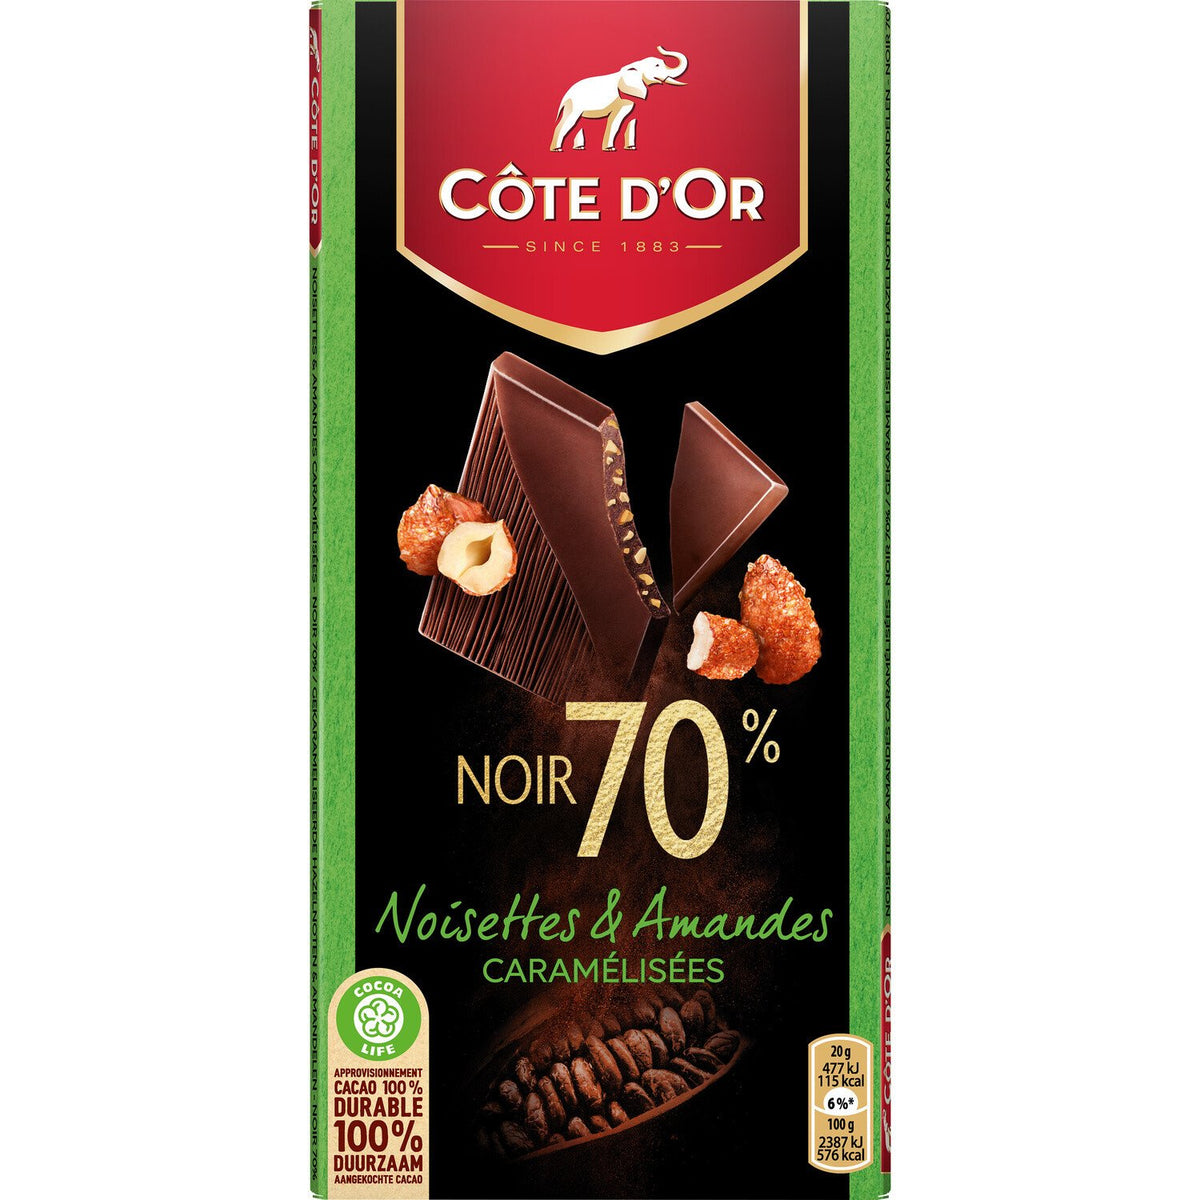 COTE D'OR Tablette de chocolat noir 70% noisettes et amandes caramélisées 100g -B22